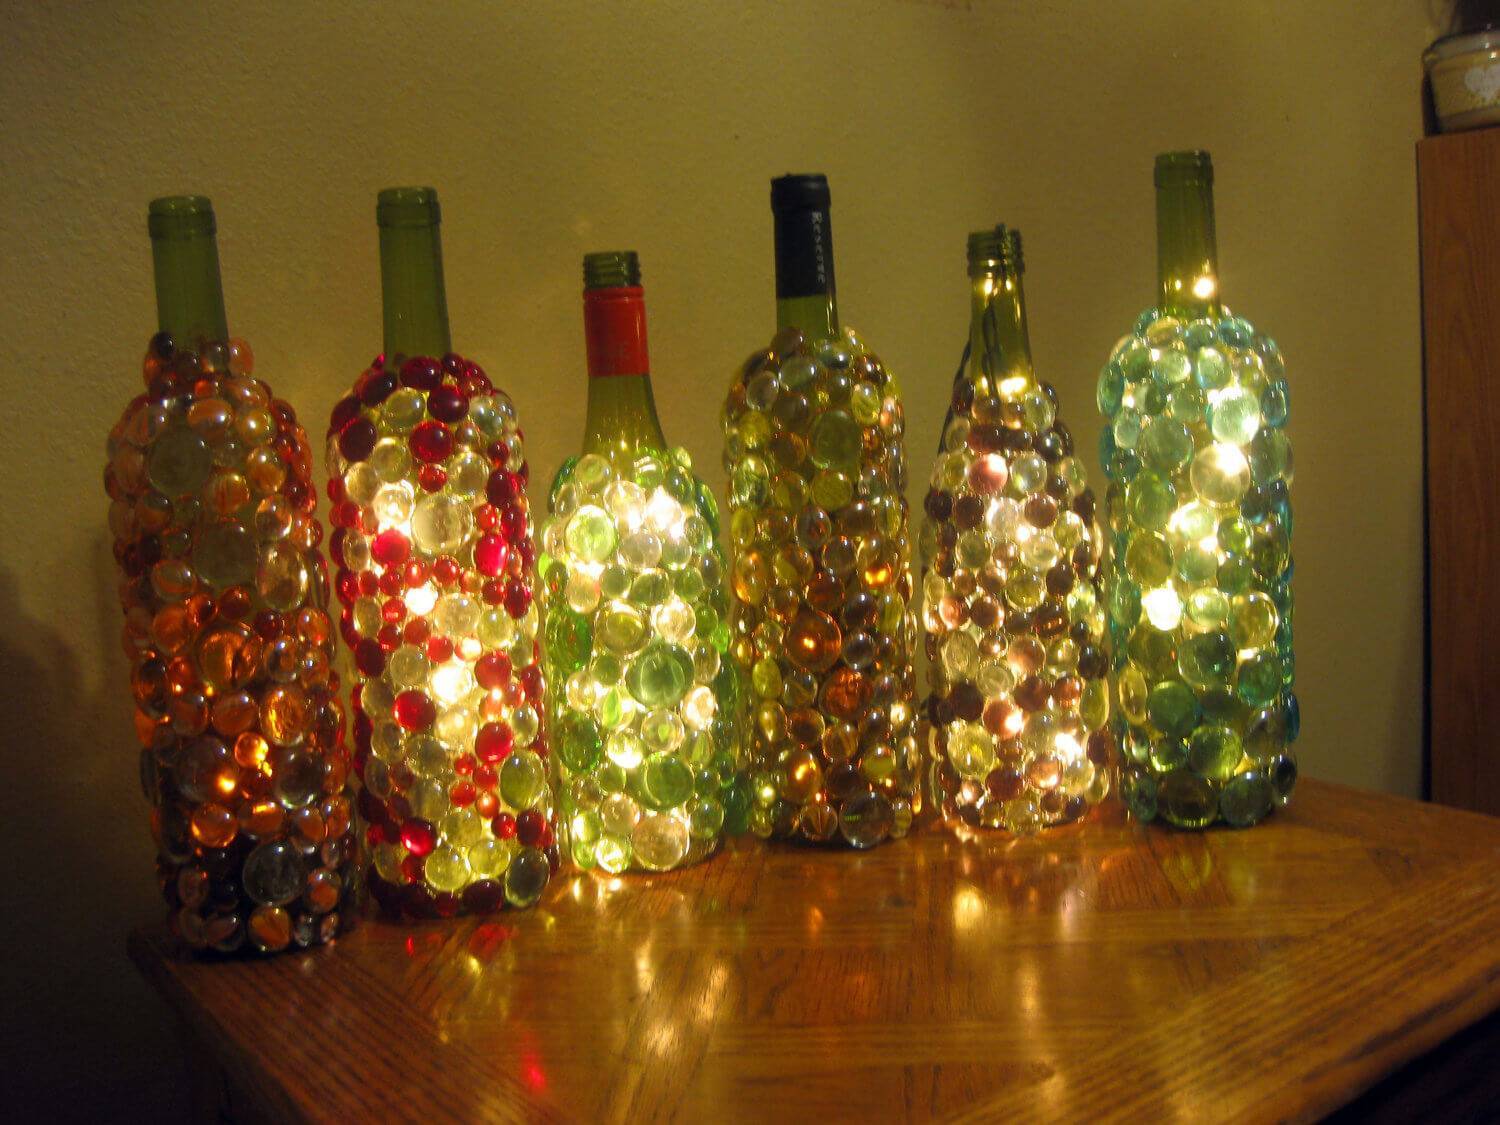 Декор бутылок своими руками: 10 красивых идей (фото)